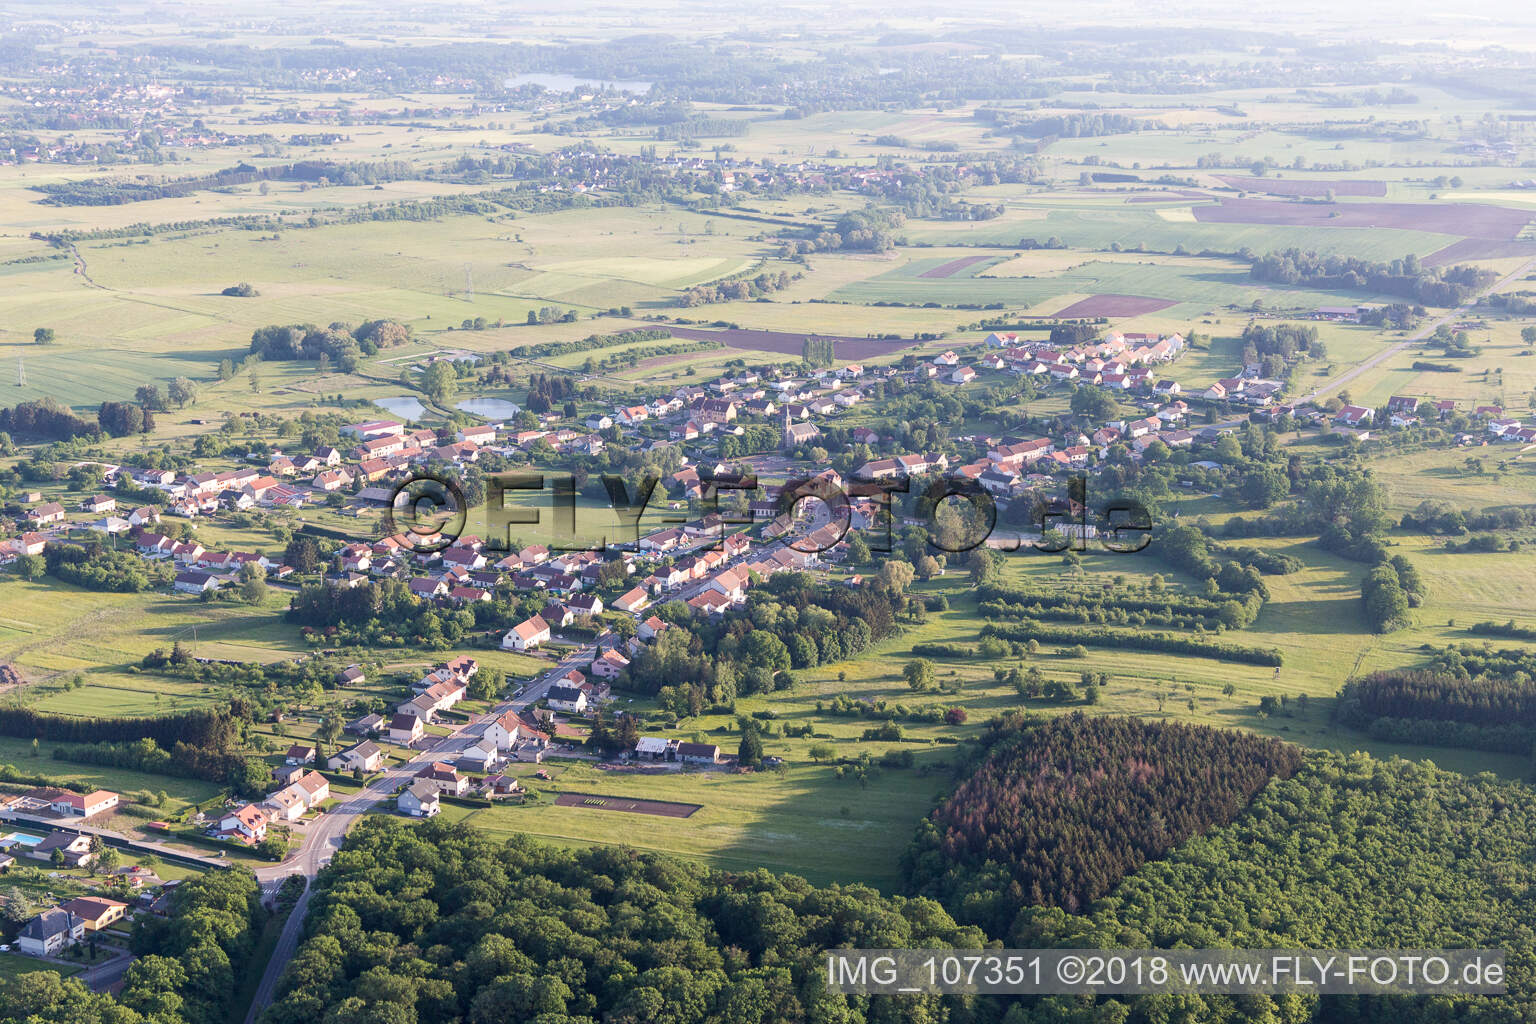 Vue aérienne de Grundviller dans le département Moselle, France